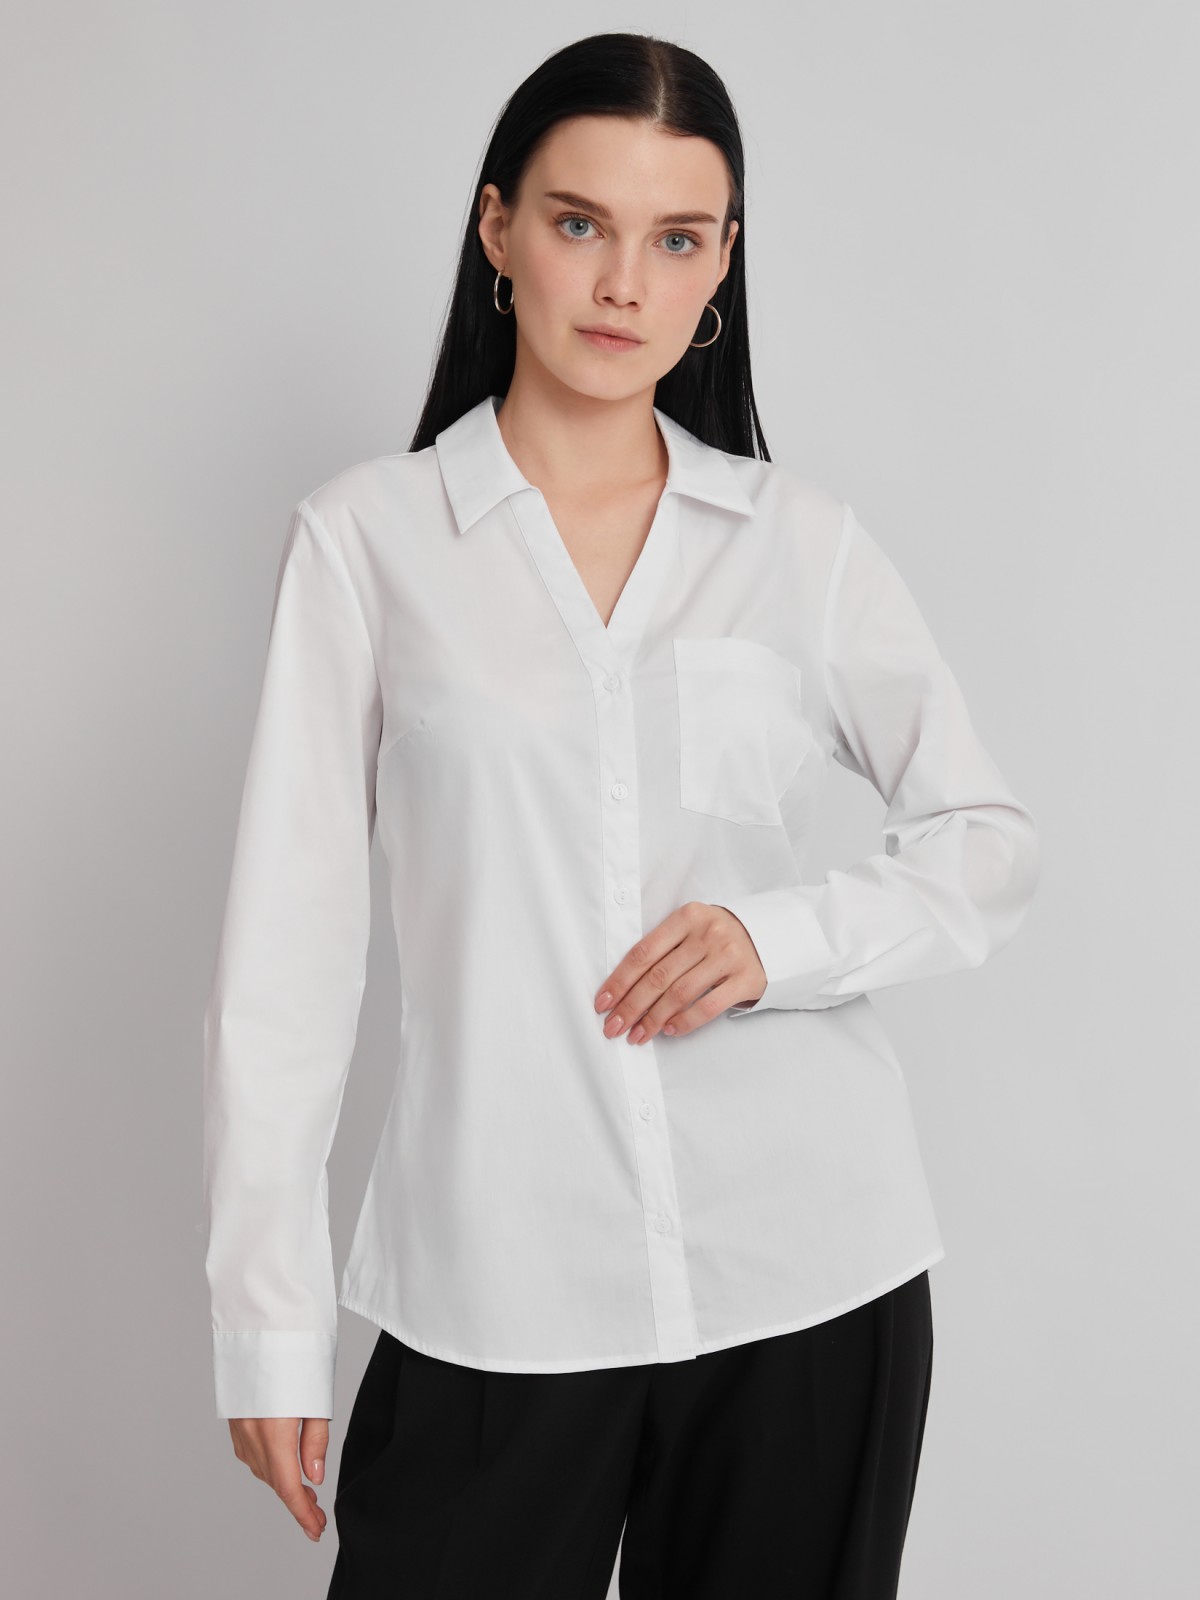 Офисная рубашка с вырезом и карманом zolla 023311159112, цвет белый, размер S - фото 5